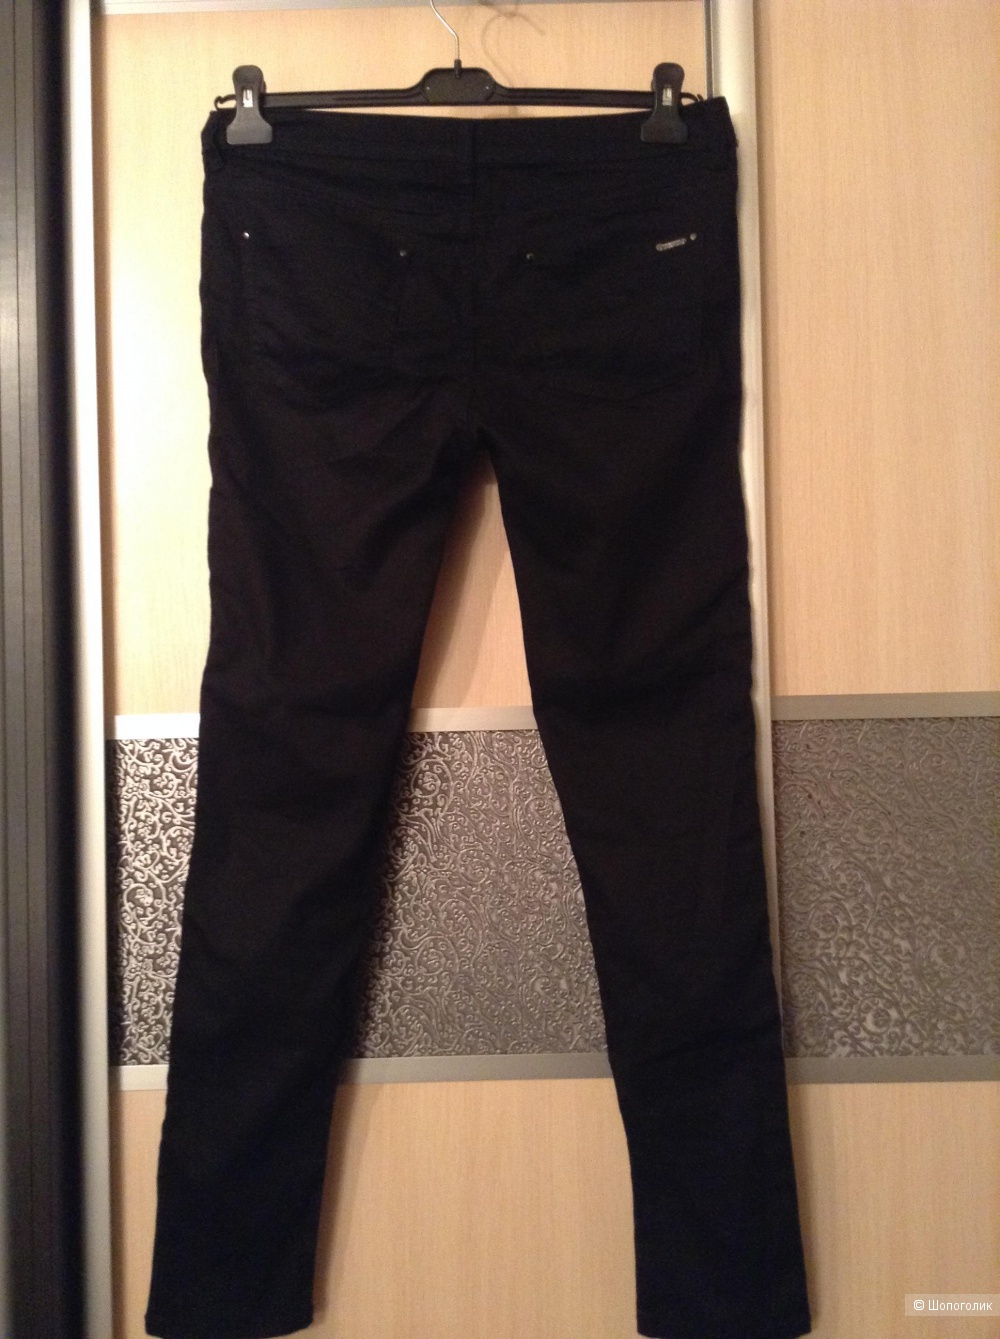 Брюки-джинсы популярного бренда Vero Moda, размер 46 Росс.